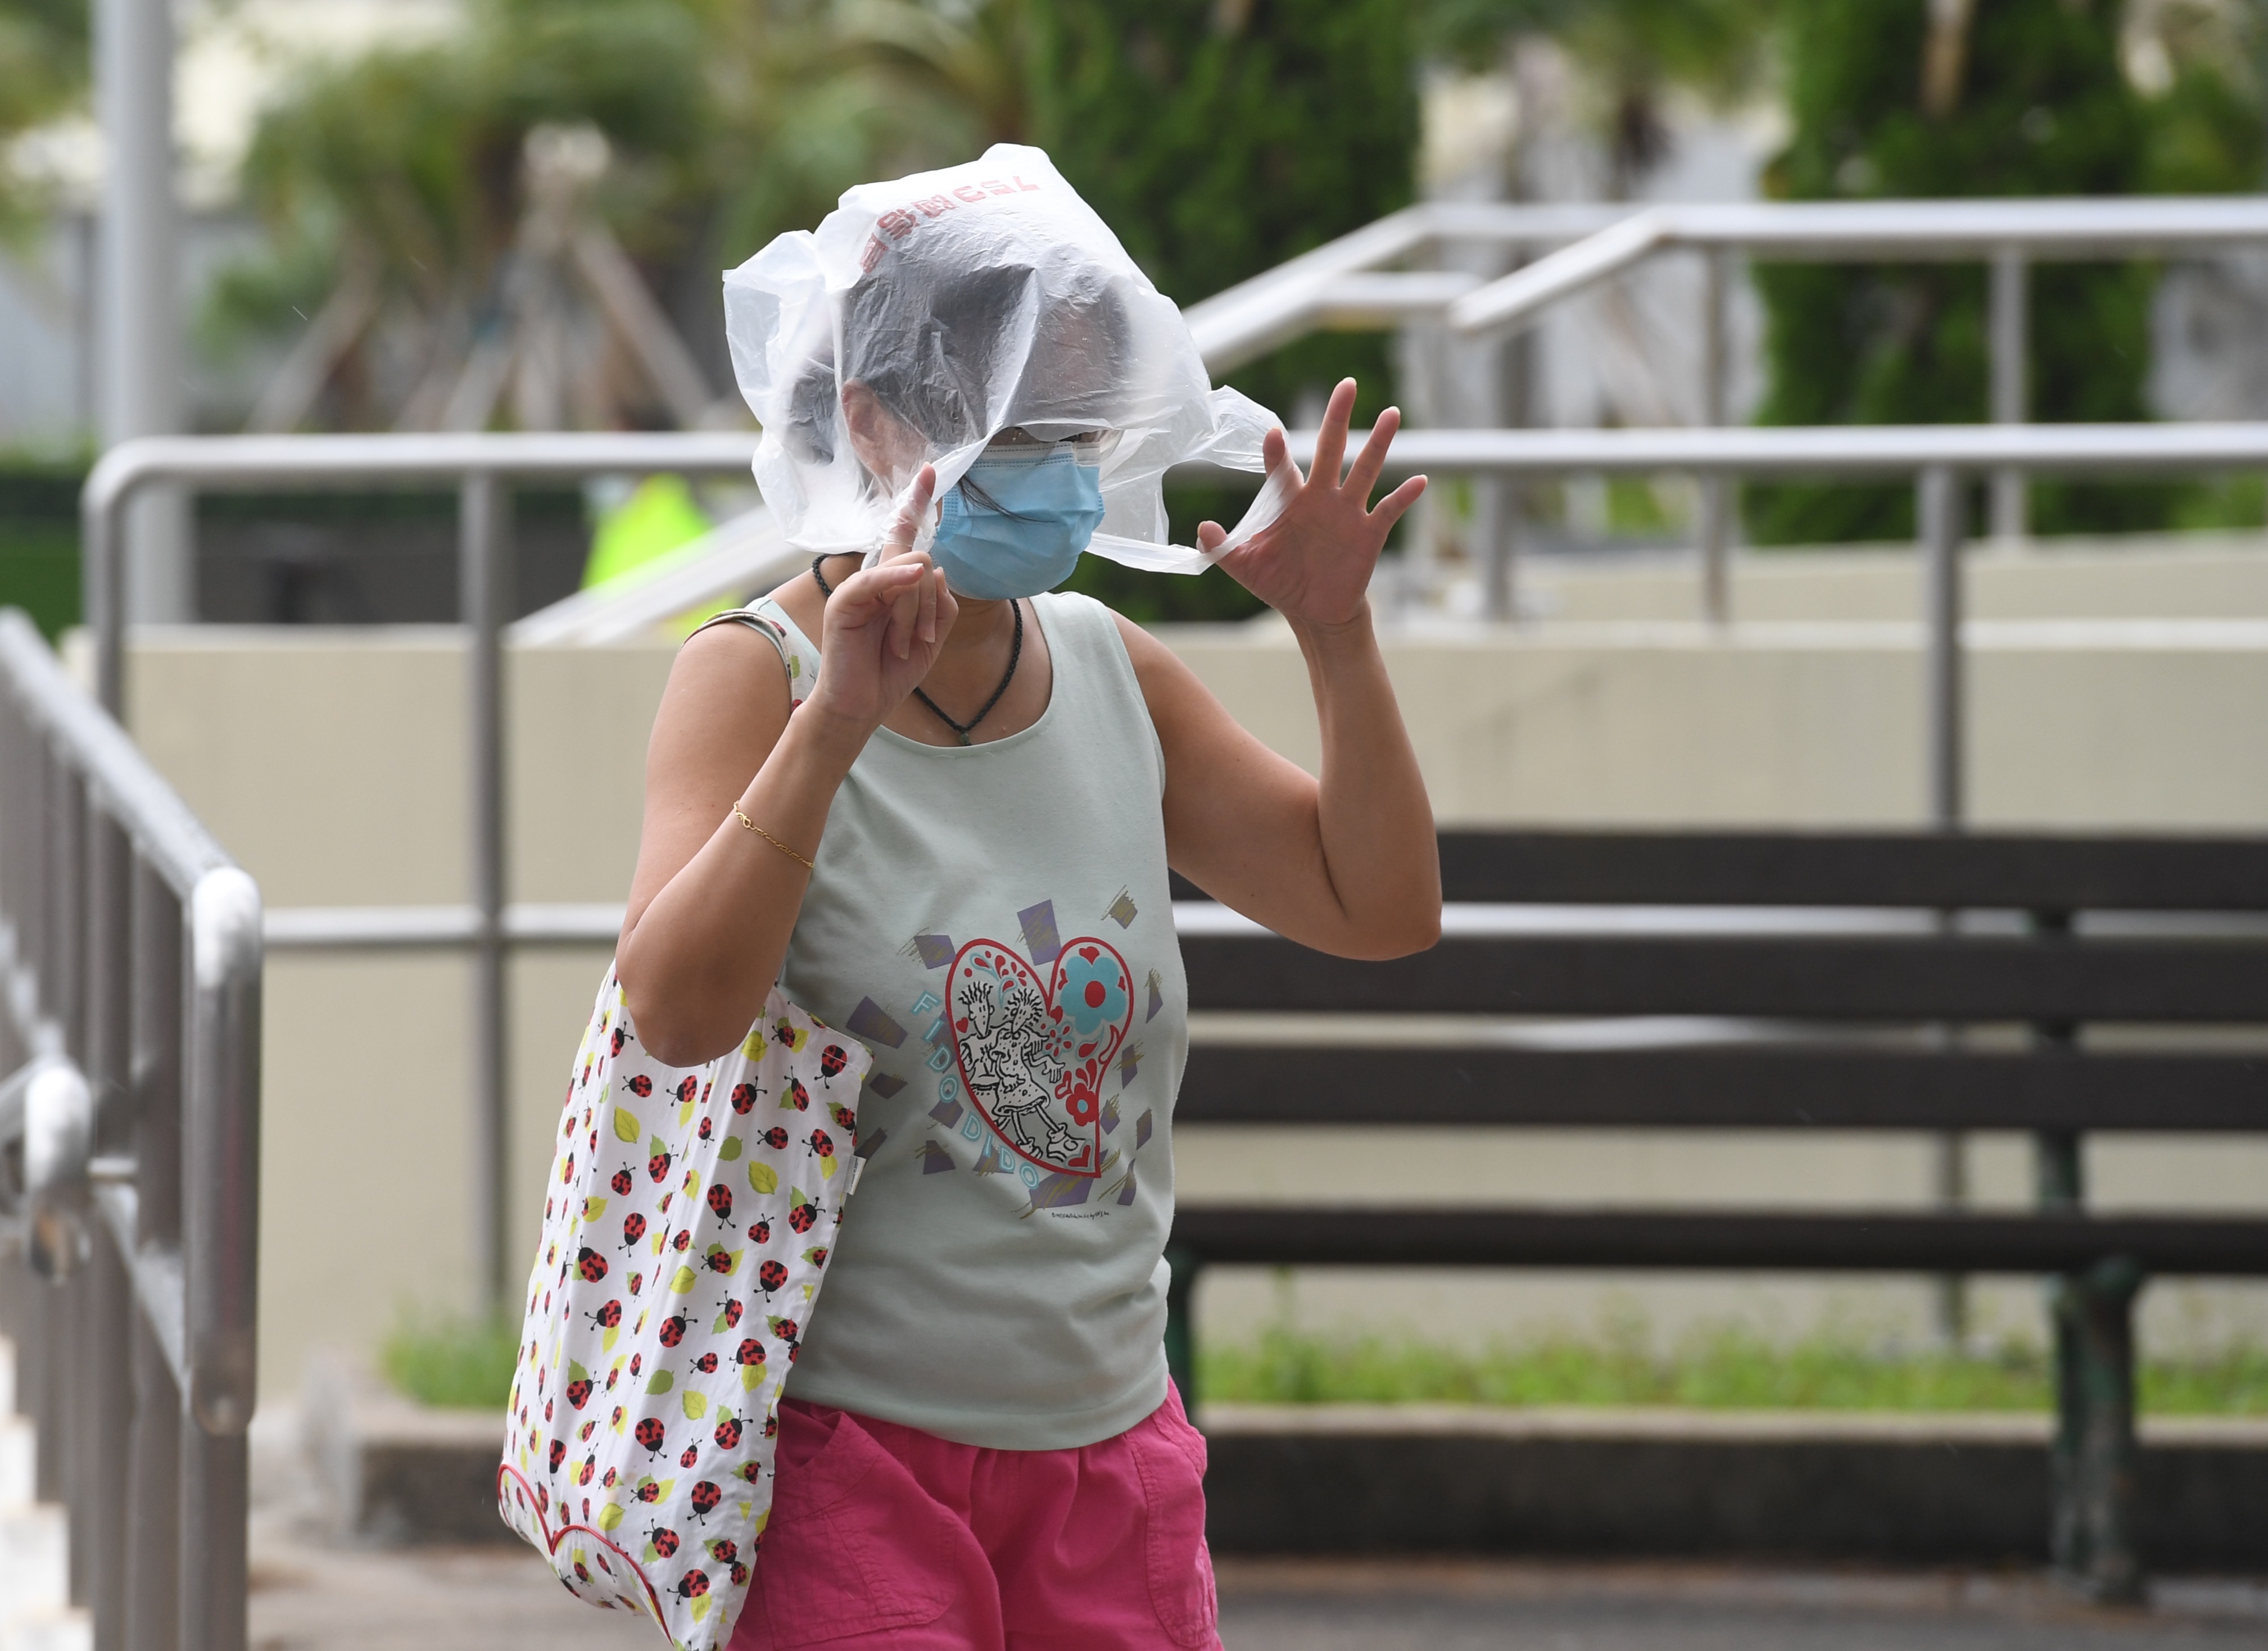 天文台在今日（13日）清晨5時40分發出8號東北烈風或暴風信號，預料颱風浪卡今早將在本港以南450公里掠過，移向海南島。

天文台表示，在熱帶風暴浪卡與東北季候風的共同影響下，本港離岸海域及高地正受烈風影響，香港南部地區風勢較大。（大公文匯全媒體記者攝）